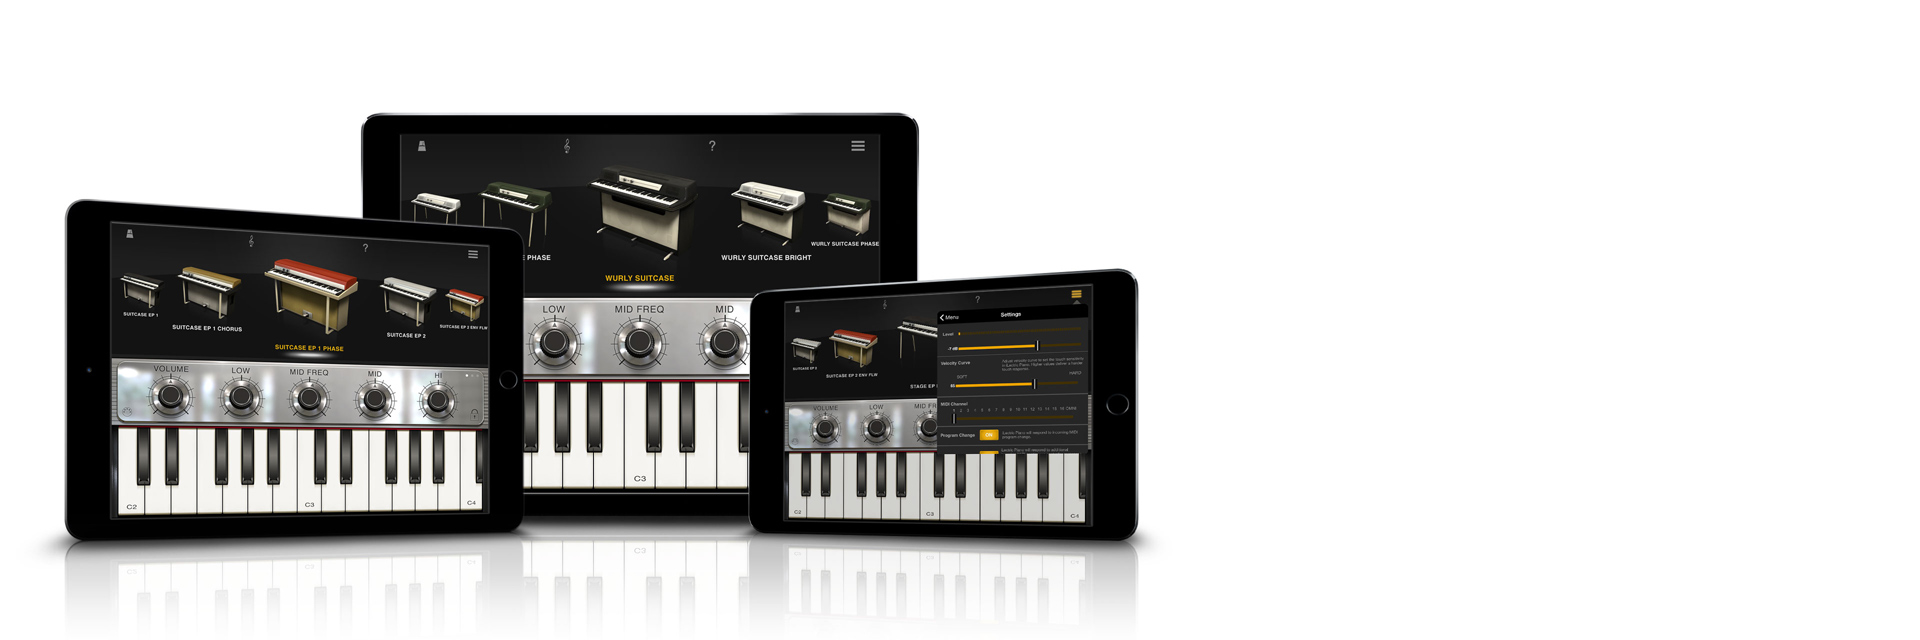 Um Teclado e um Piano online – Wwwhat's new? – Aplicações e tecnologia